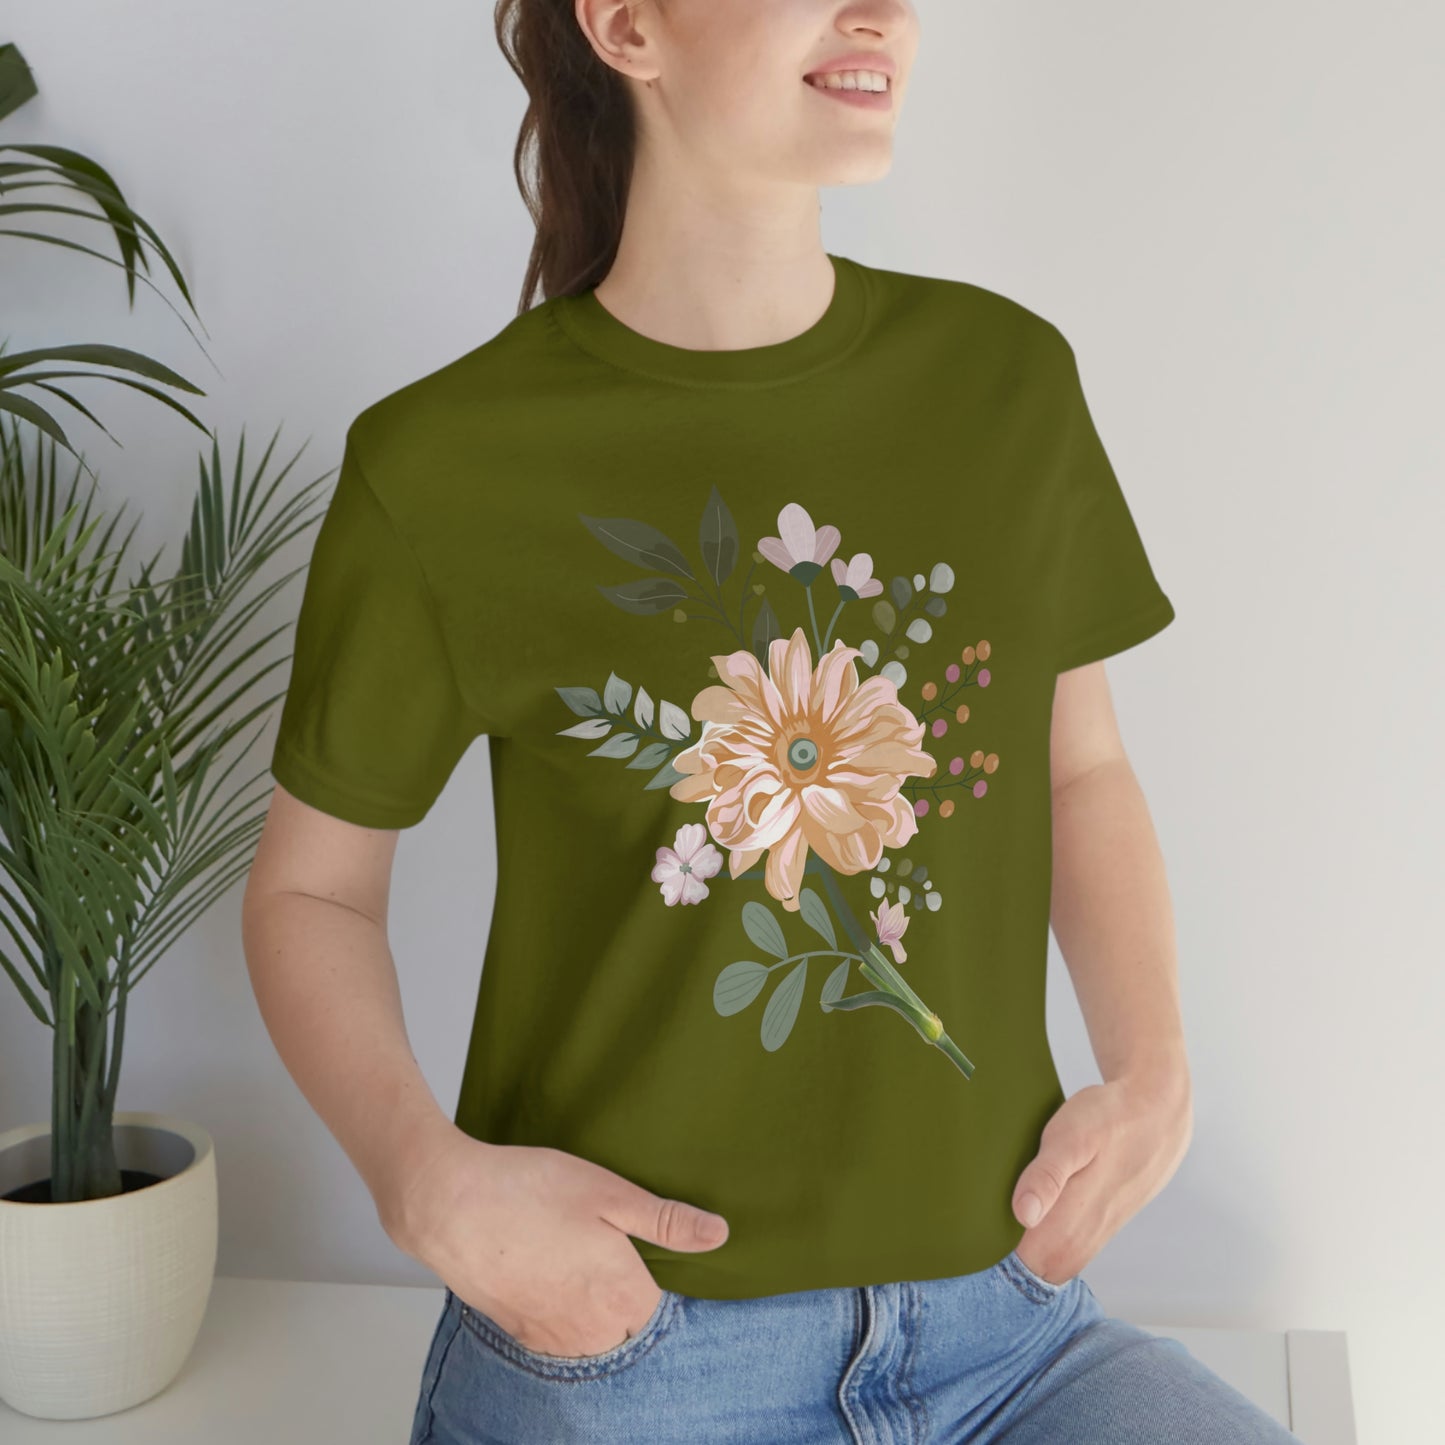 Cute Flower T-shirt - Nature lover Shirt - Cute Flower lover shirt